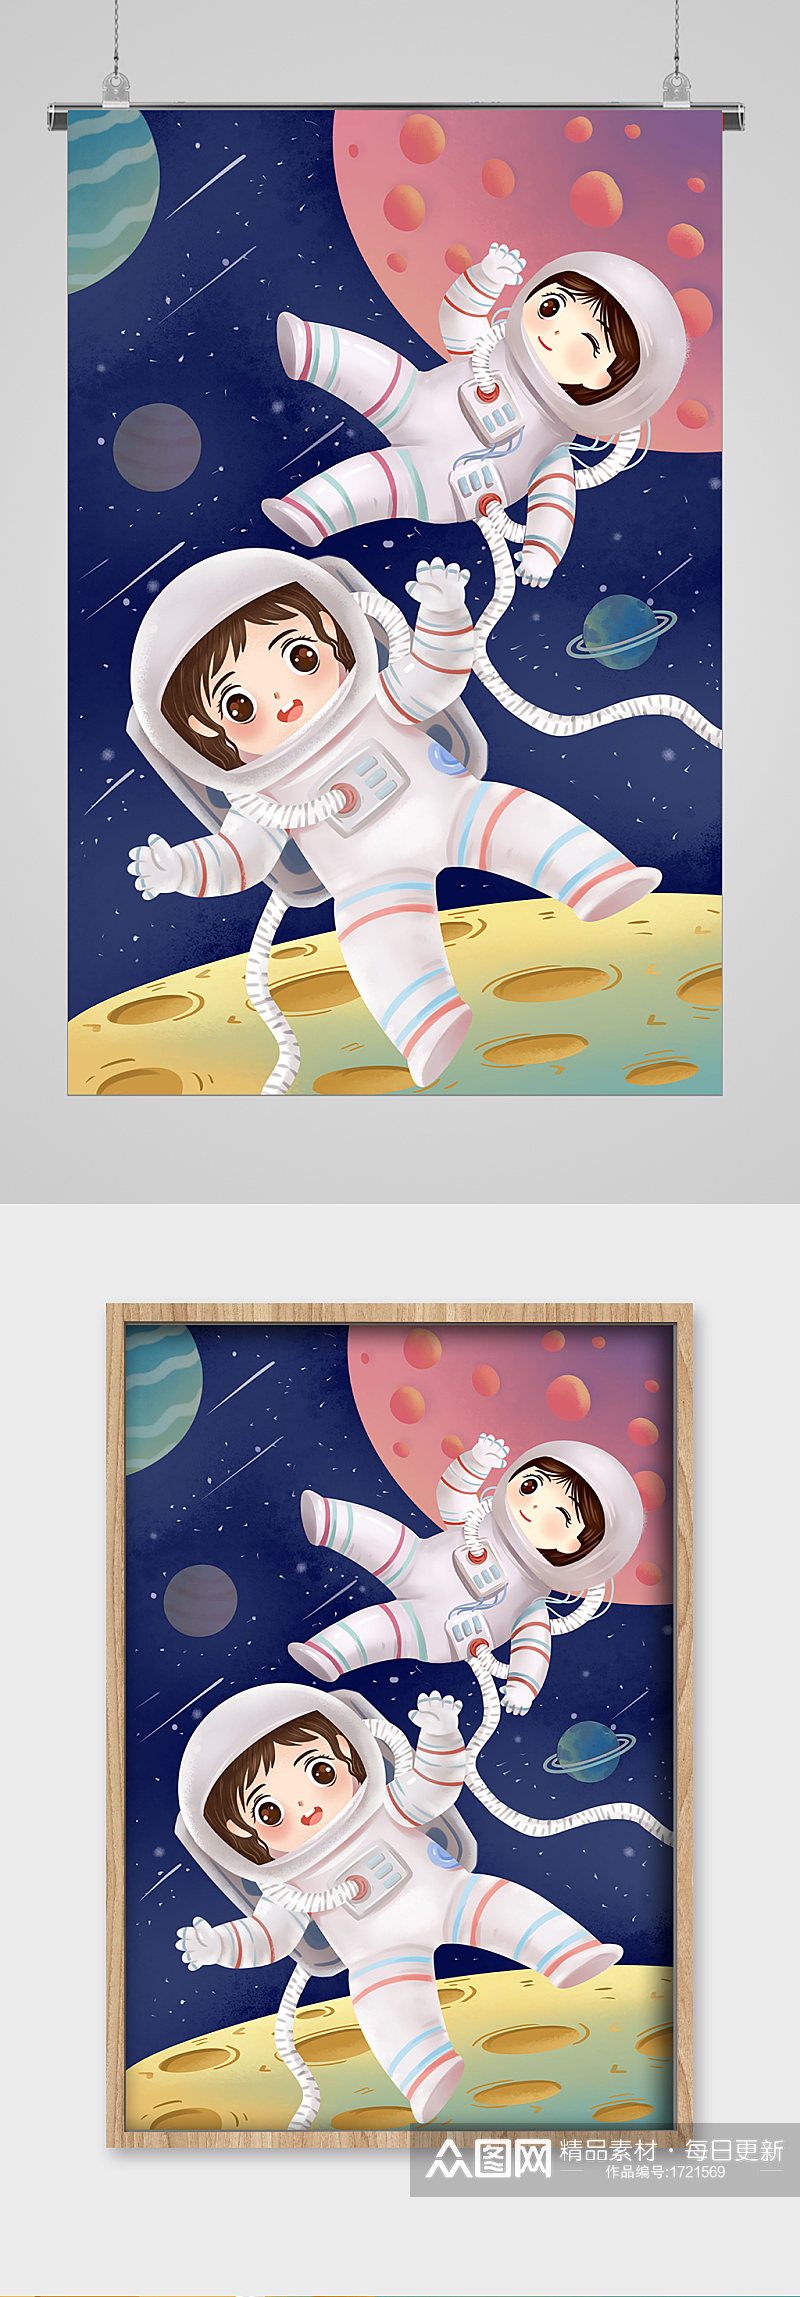 可爱宇航员中国航天日宣传插画素材